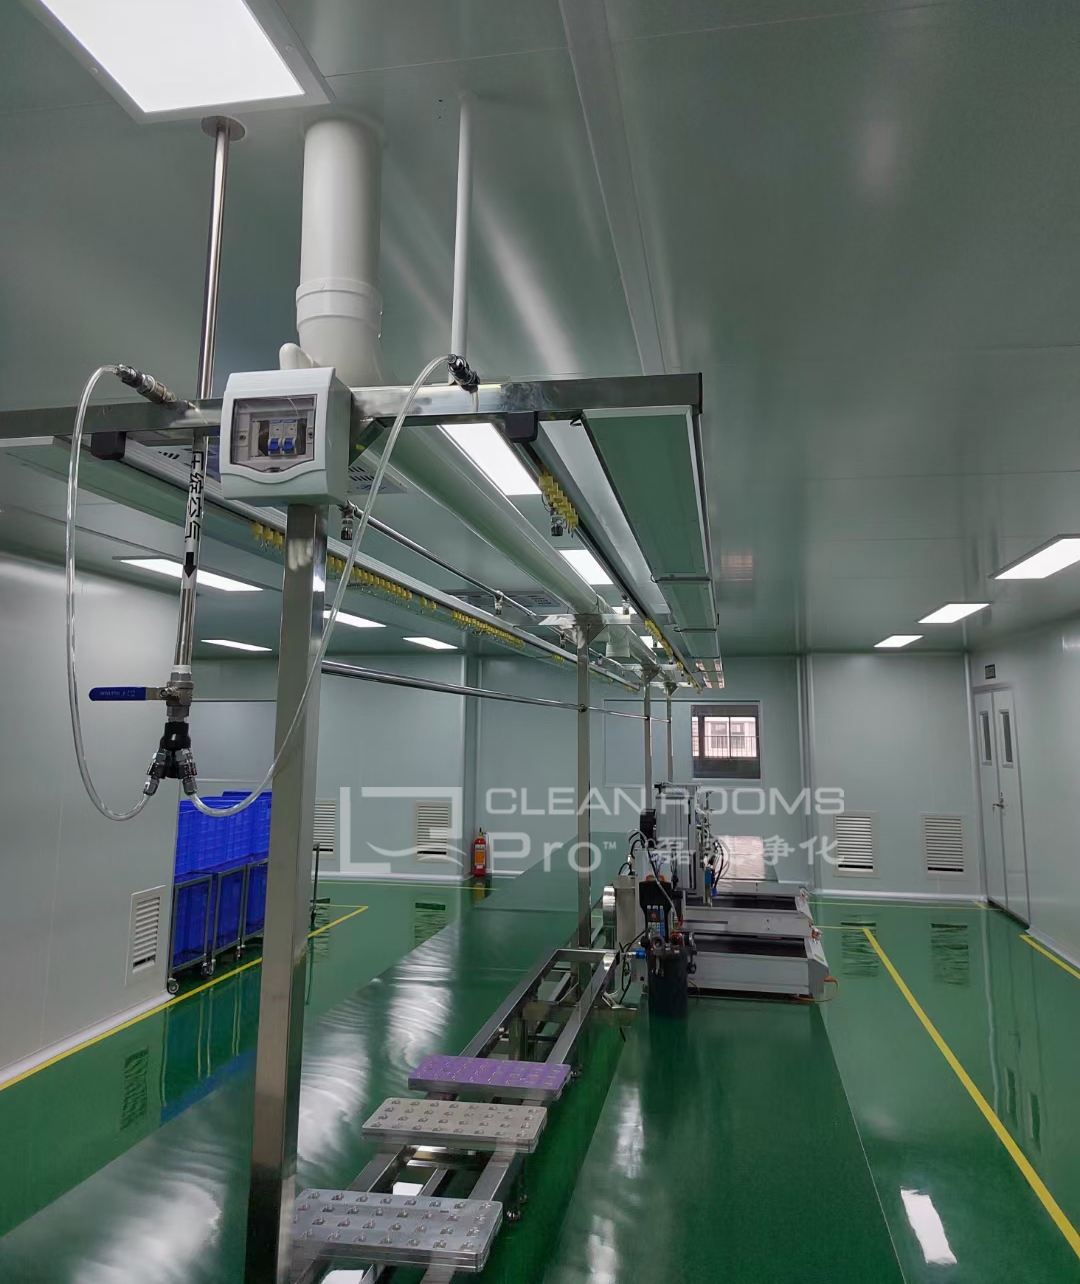 上海三类医疗器械美容针产品生产万级净化车间装修施工案例 (2)